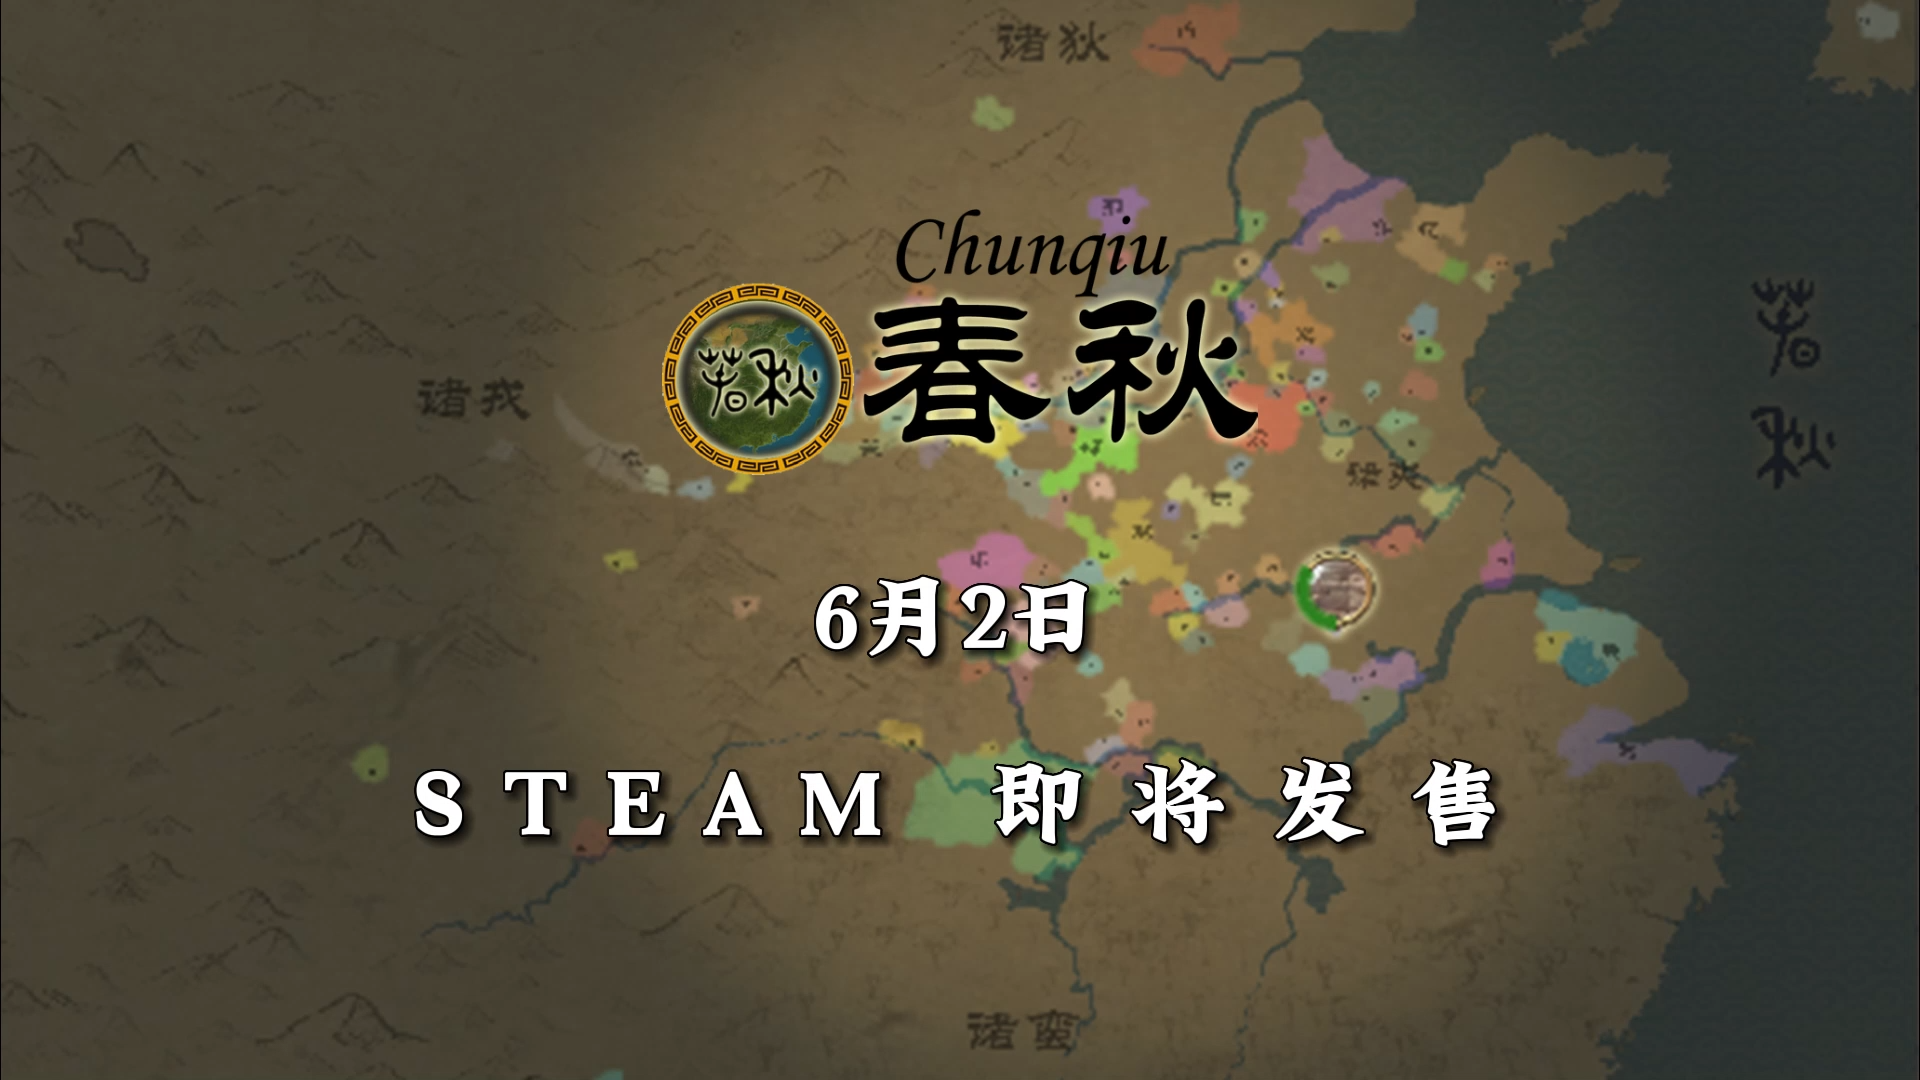 历史战略类即时制游戏《春秋》6月2日登陆Steam 支持玩家建造城墙、修筑长城等